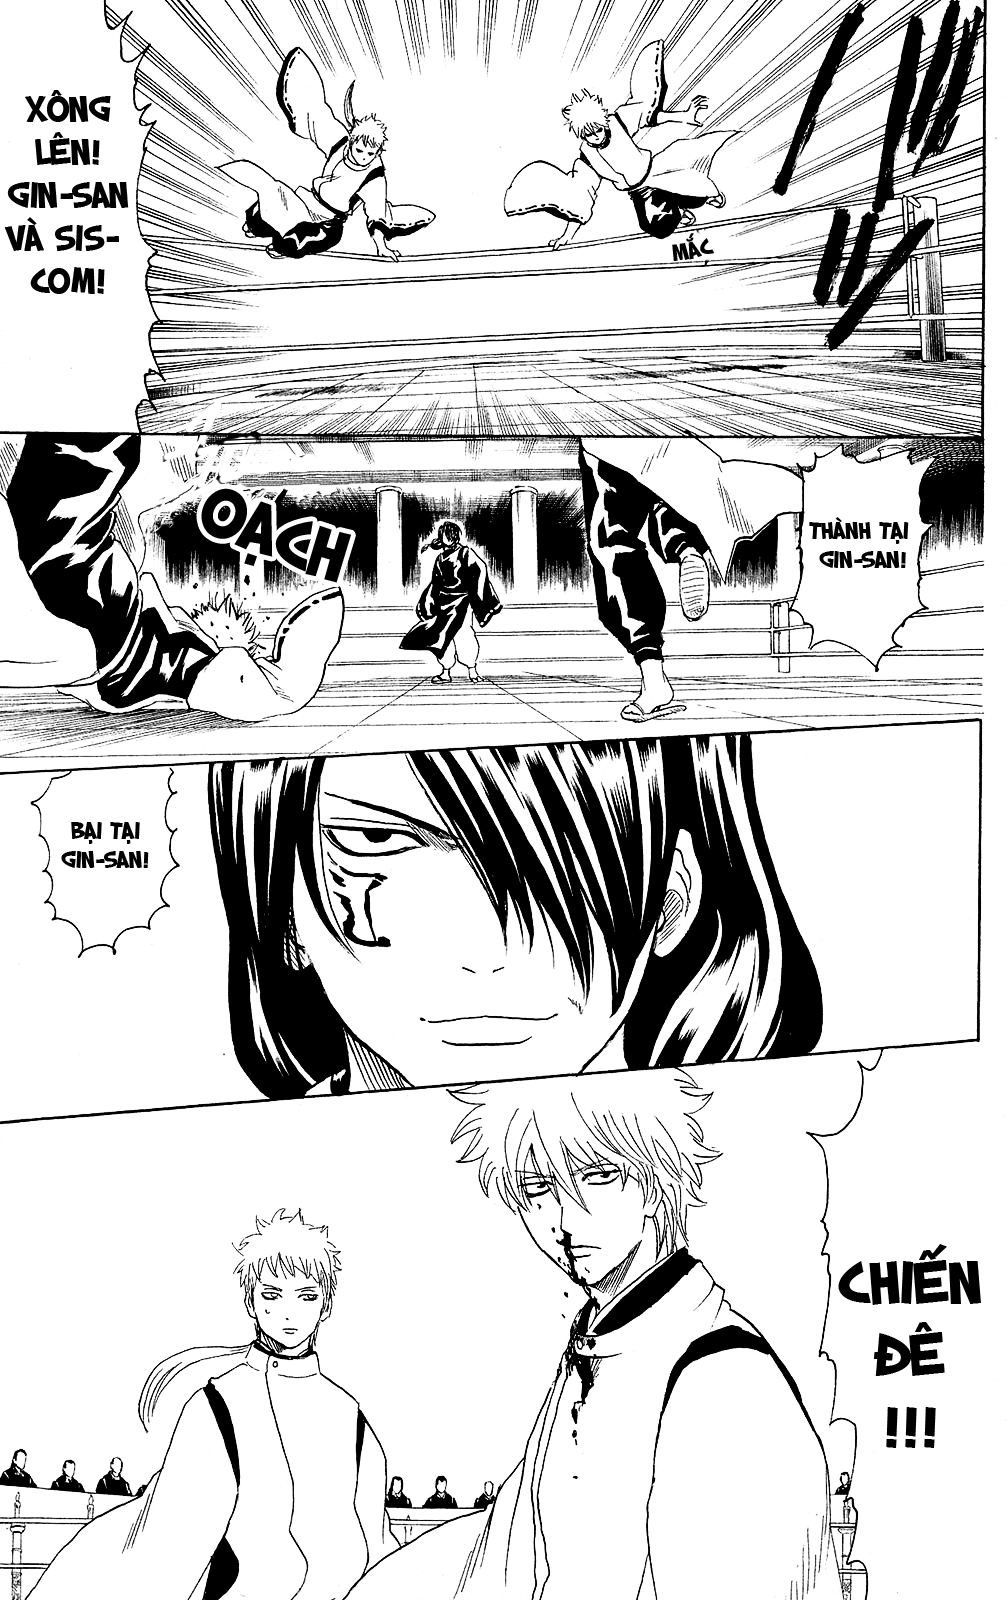 Gintama chapter 285 trang 20